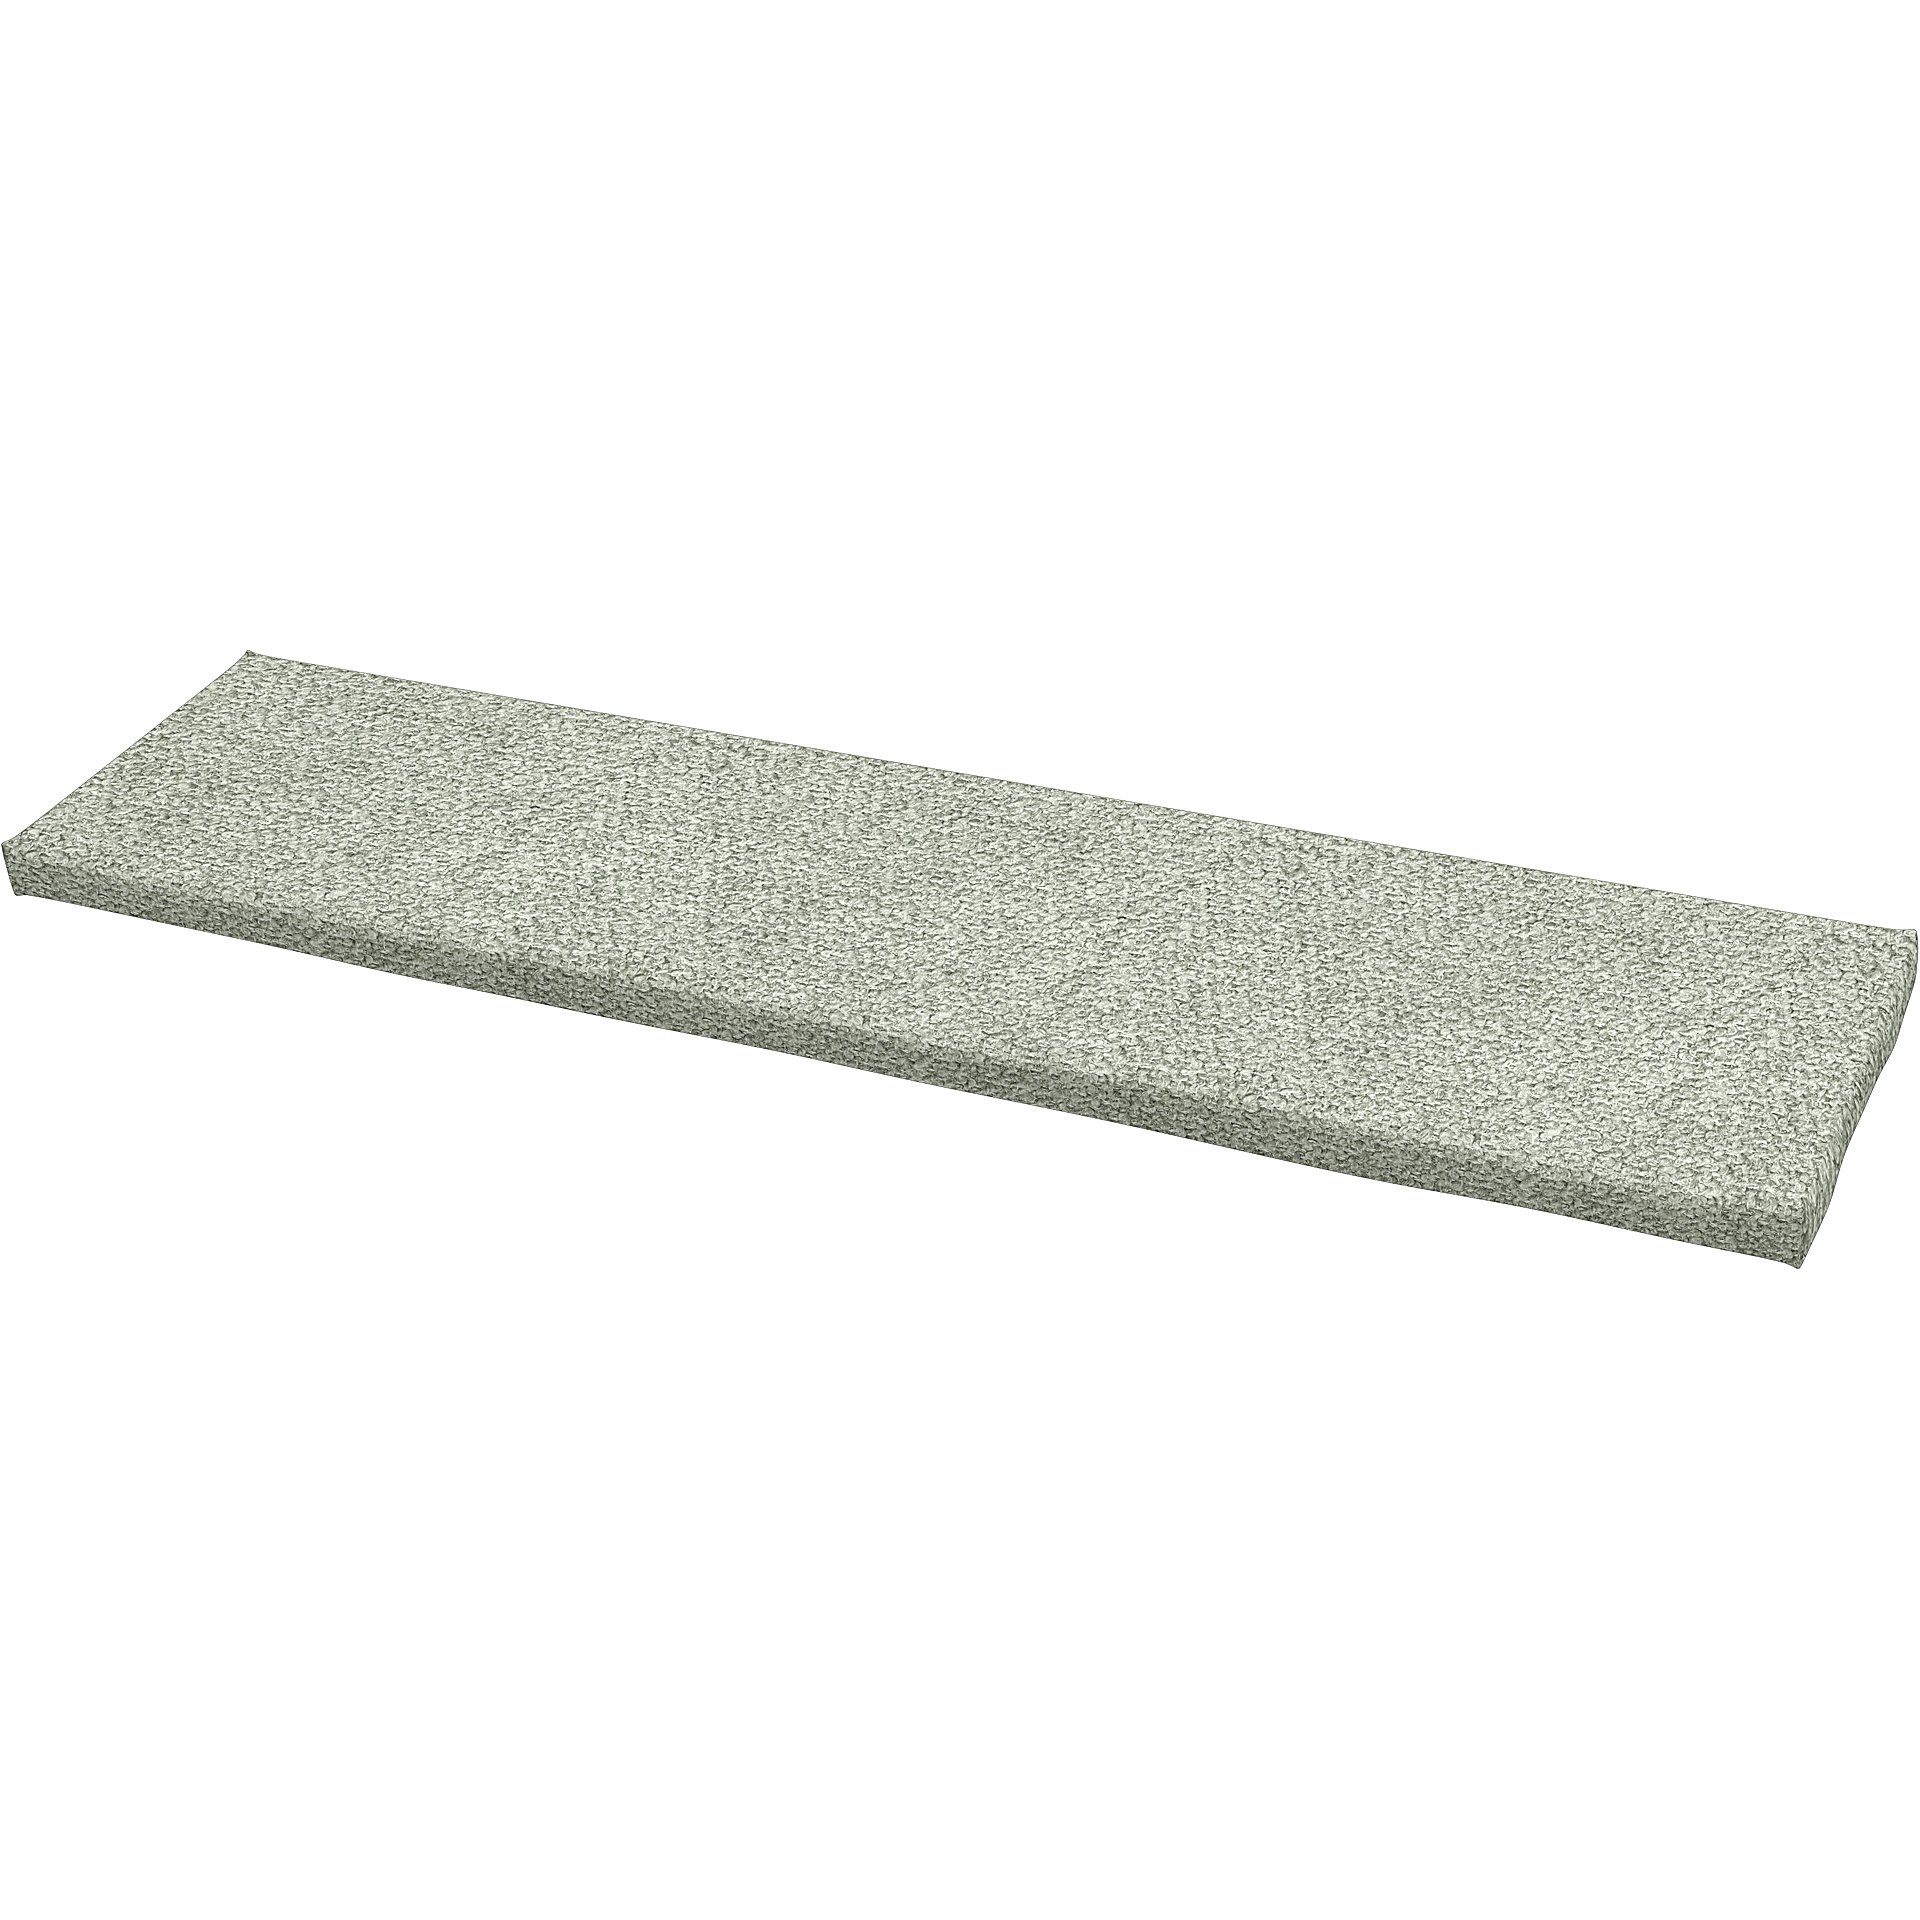 IKEA - Universal bench cushion cover 140x35x3,5 cm, Pistachio, Boucle & Texture - Bemz